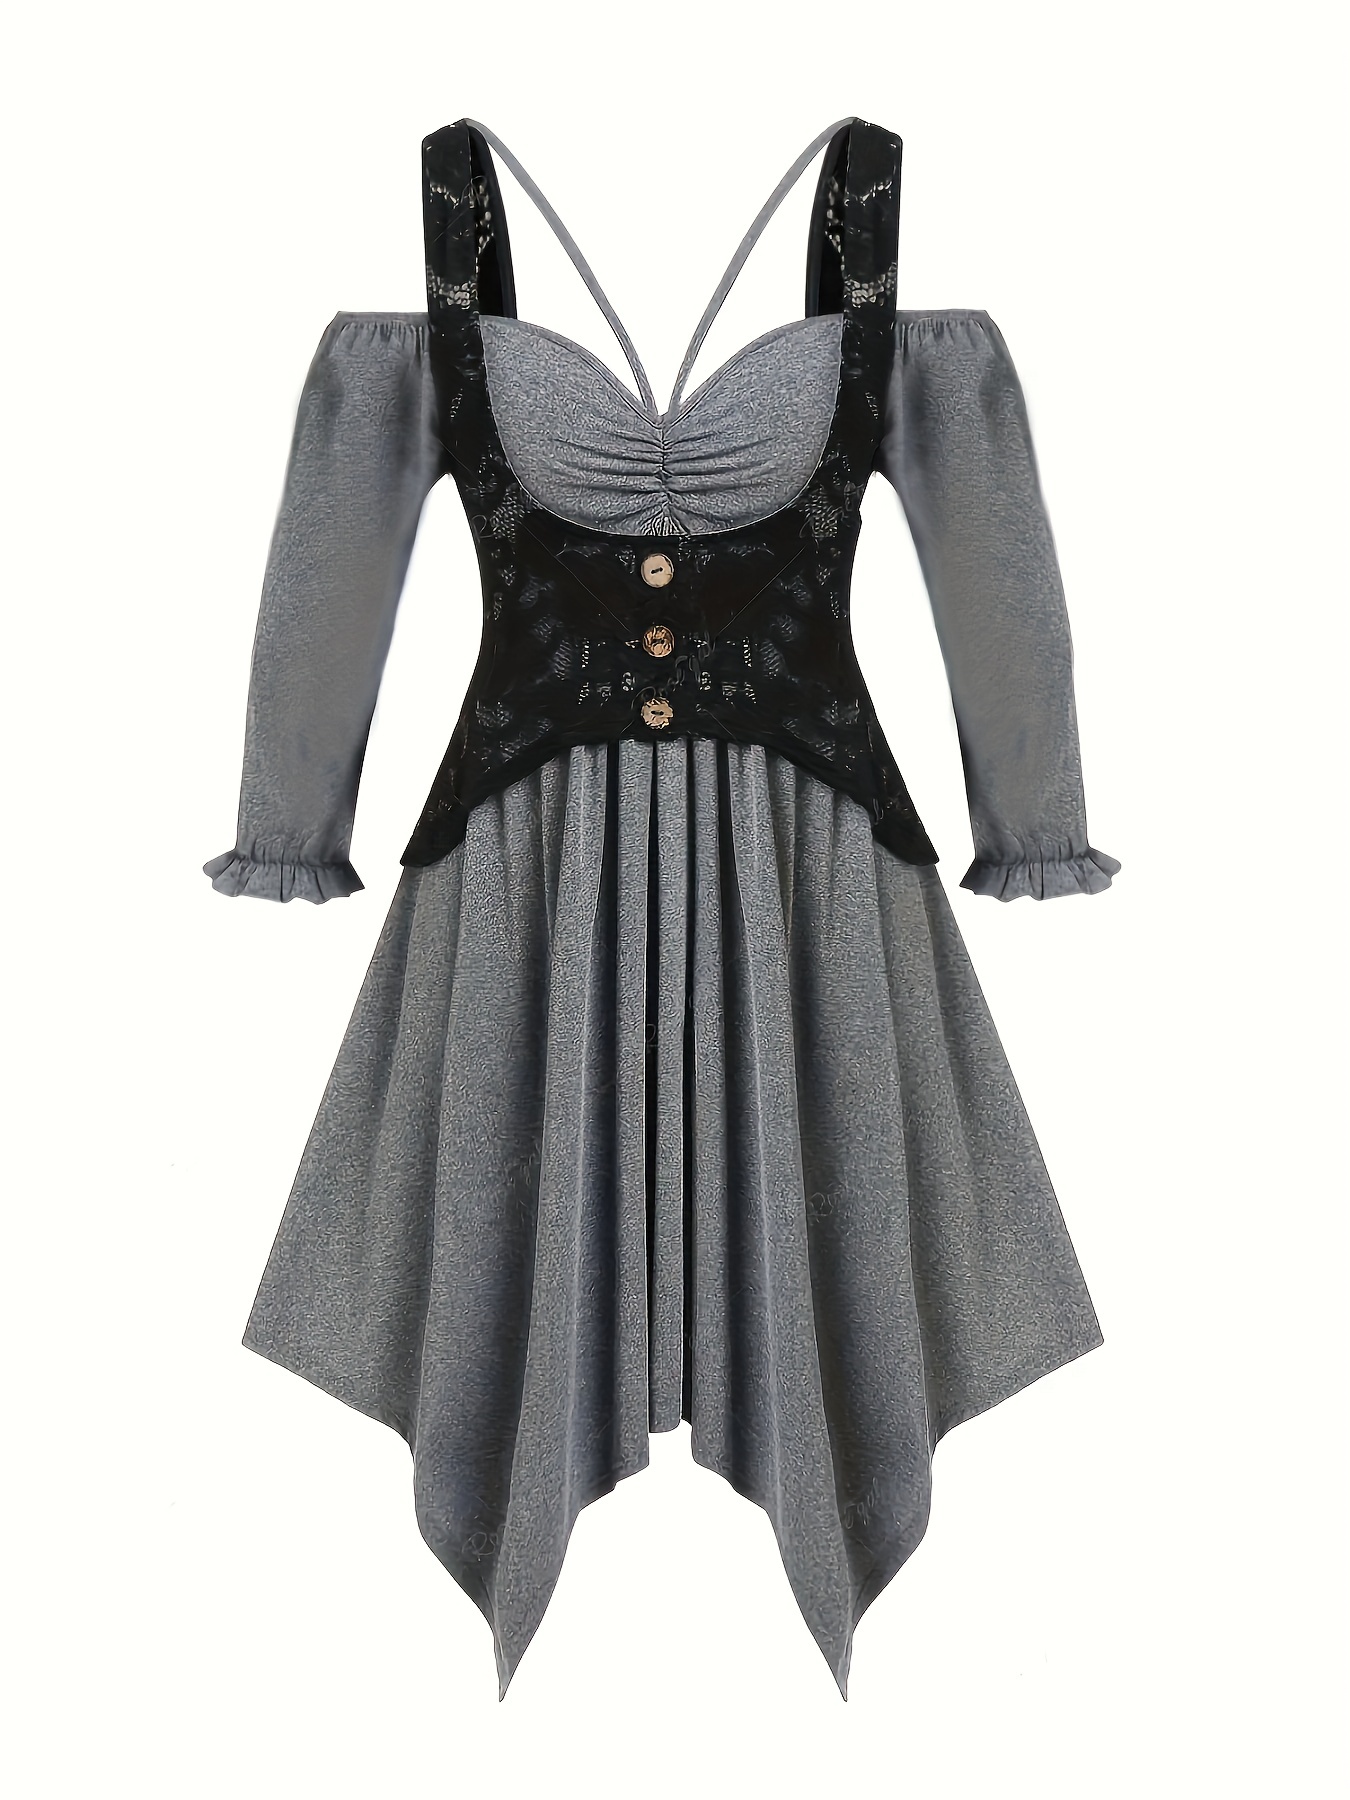 Plus Size Gothic Dress, Women's Plus Floral Lace Cold Shoulder Bell Sleeve  Lace Up Party Retro Dress